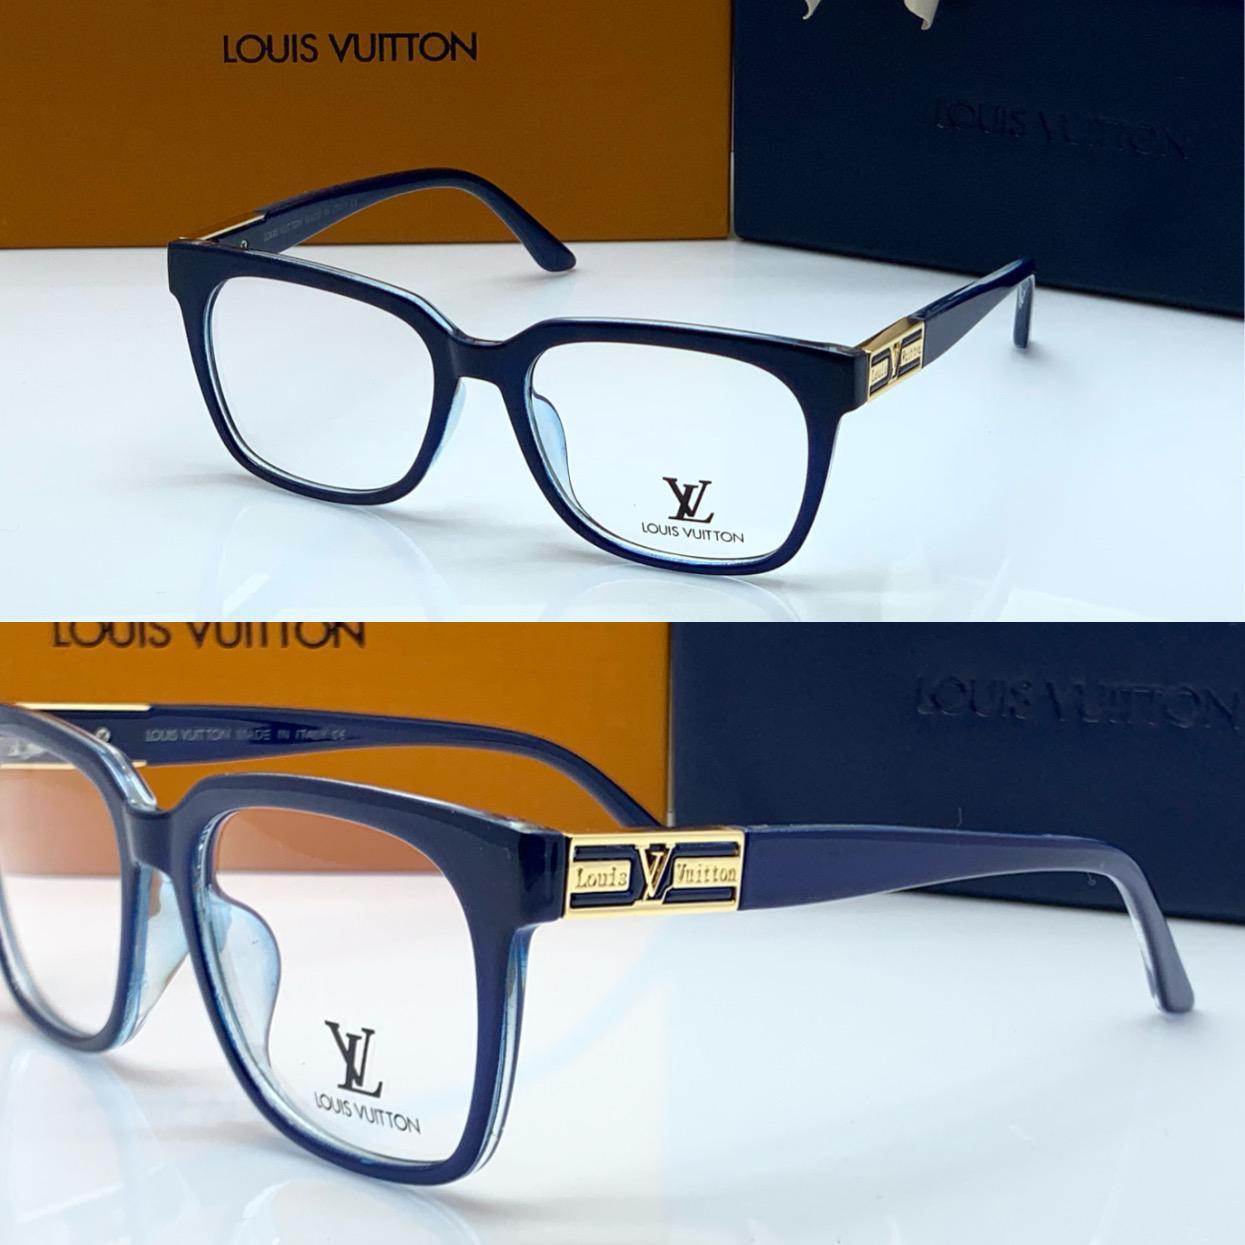 Louis Vuitton Transparent Glass Men's Women's Sunglass For Man Woman Or Girl Lv-186 Design Blue Stick Gift Sunglass